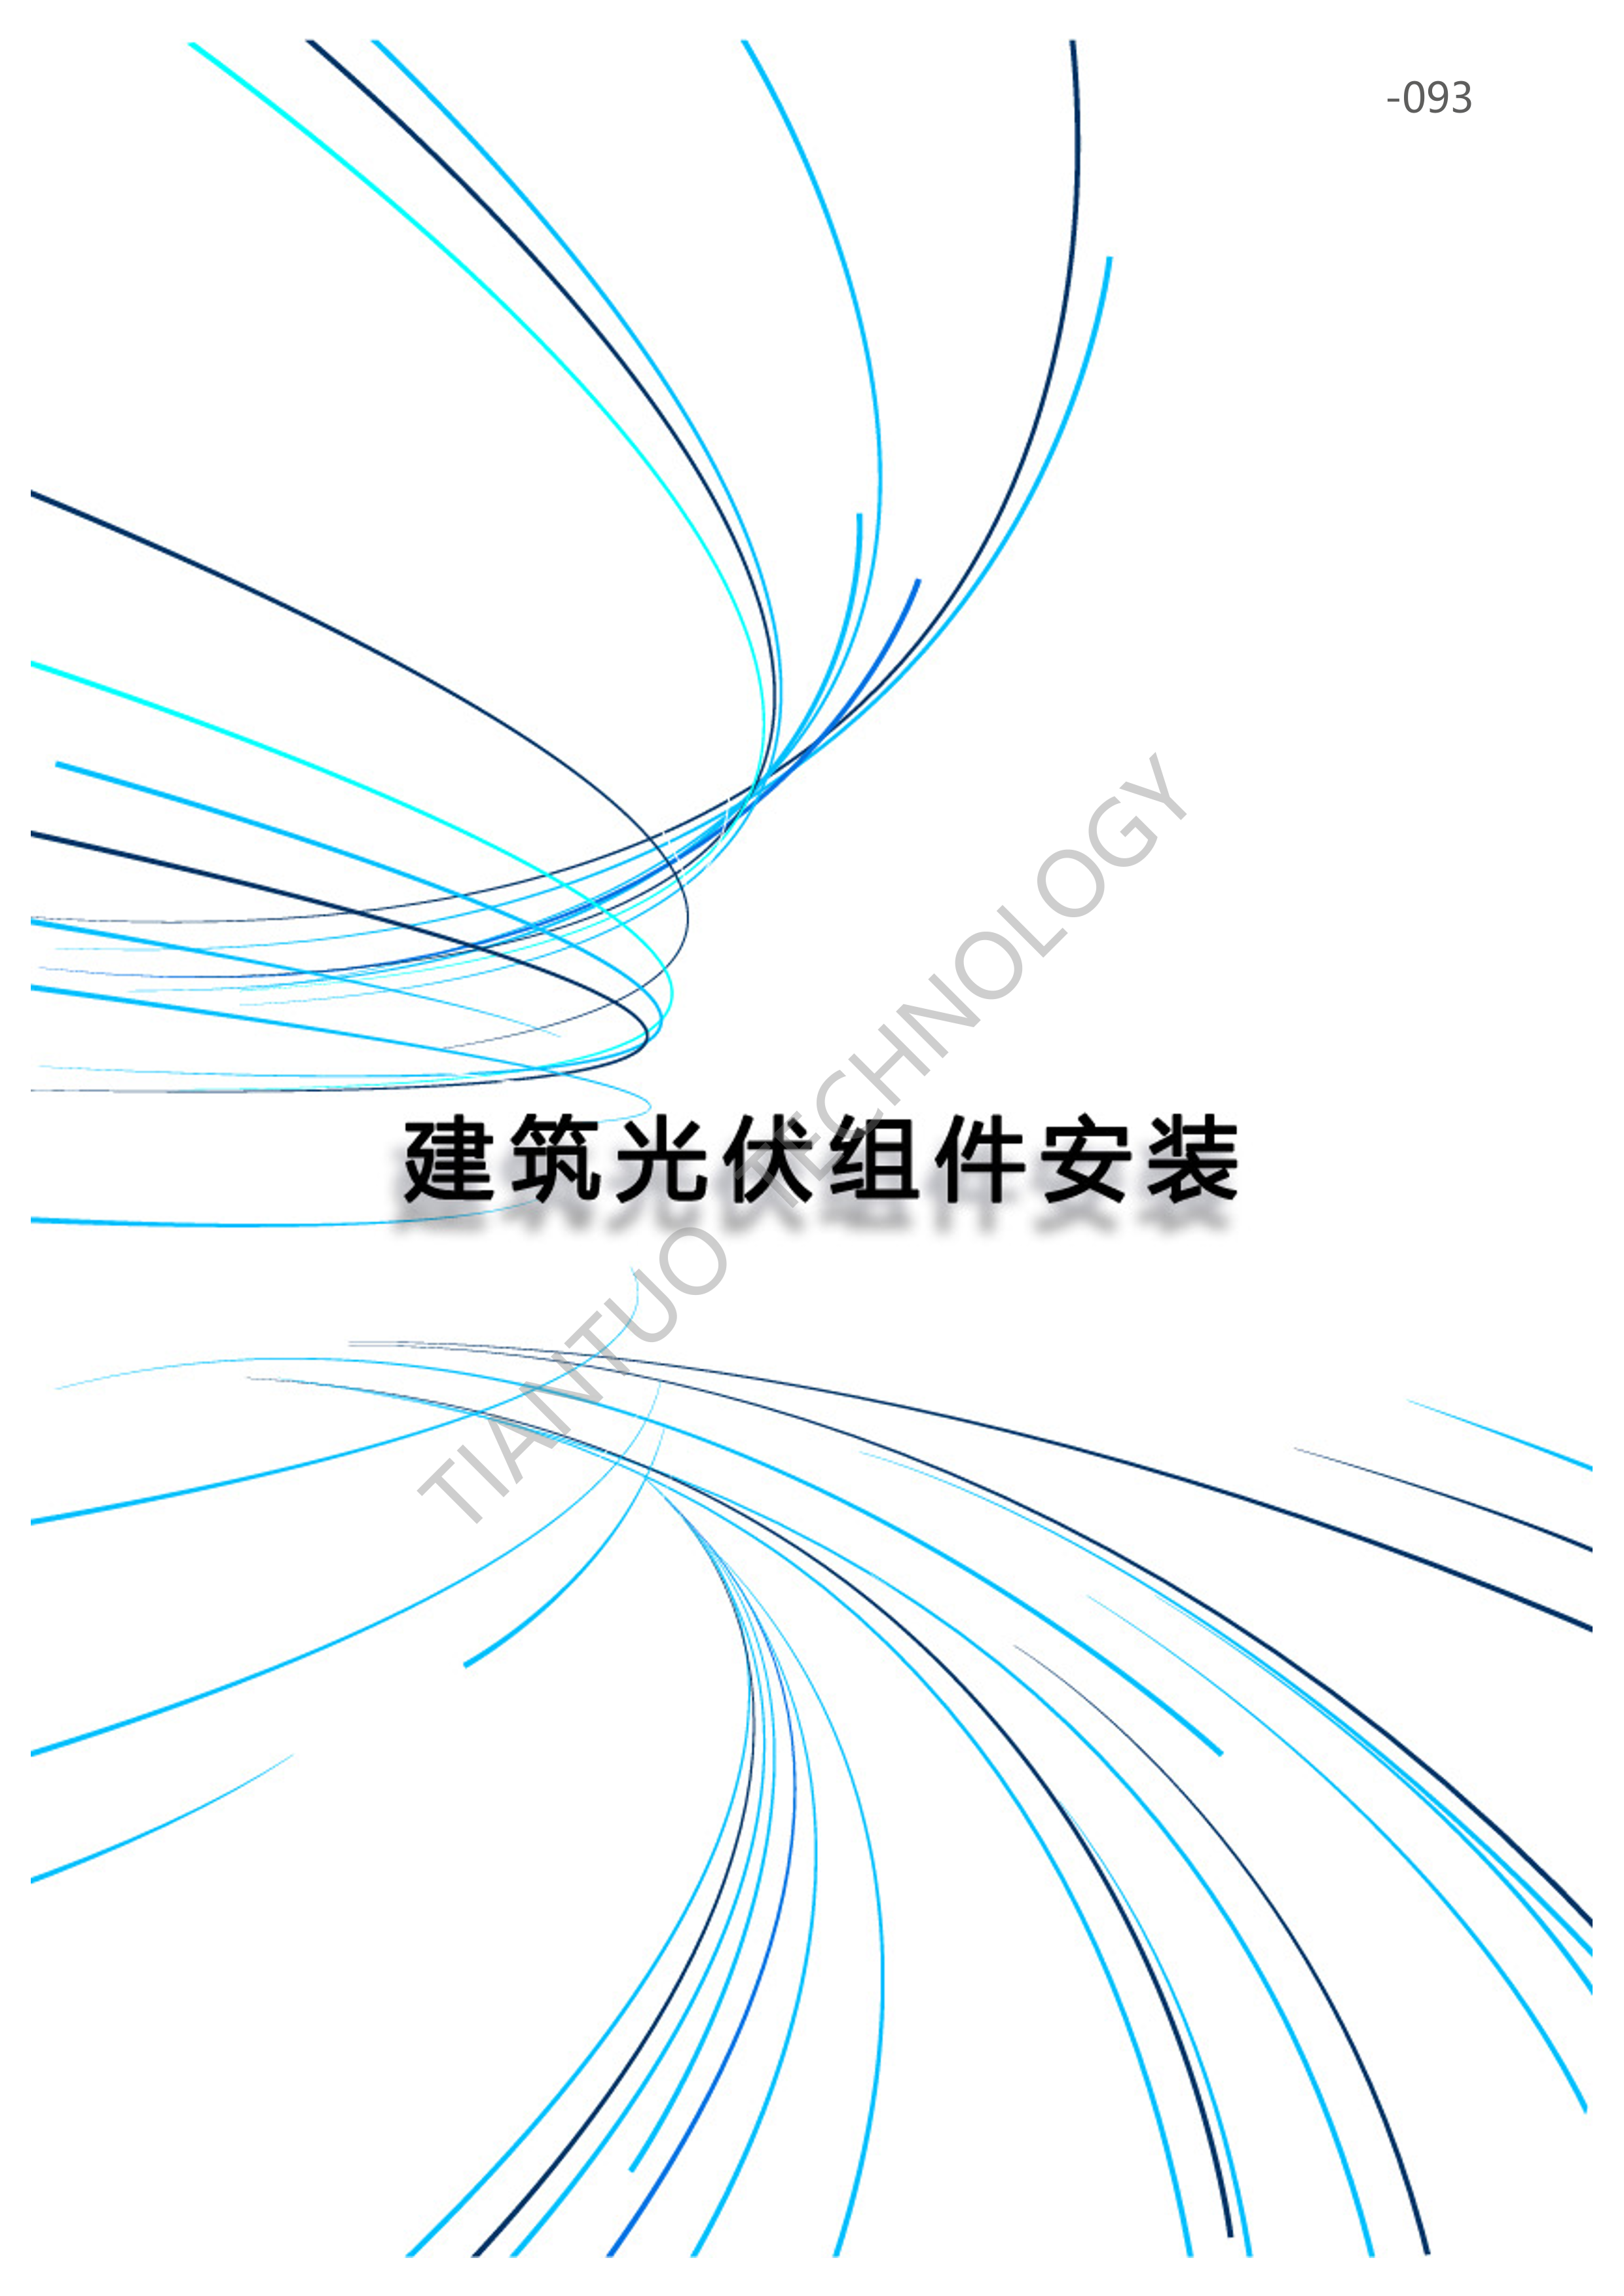 天托科技_BIPV分布式光伏发电技术手册5.0_96.png